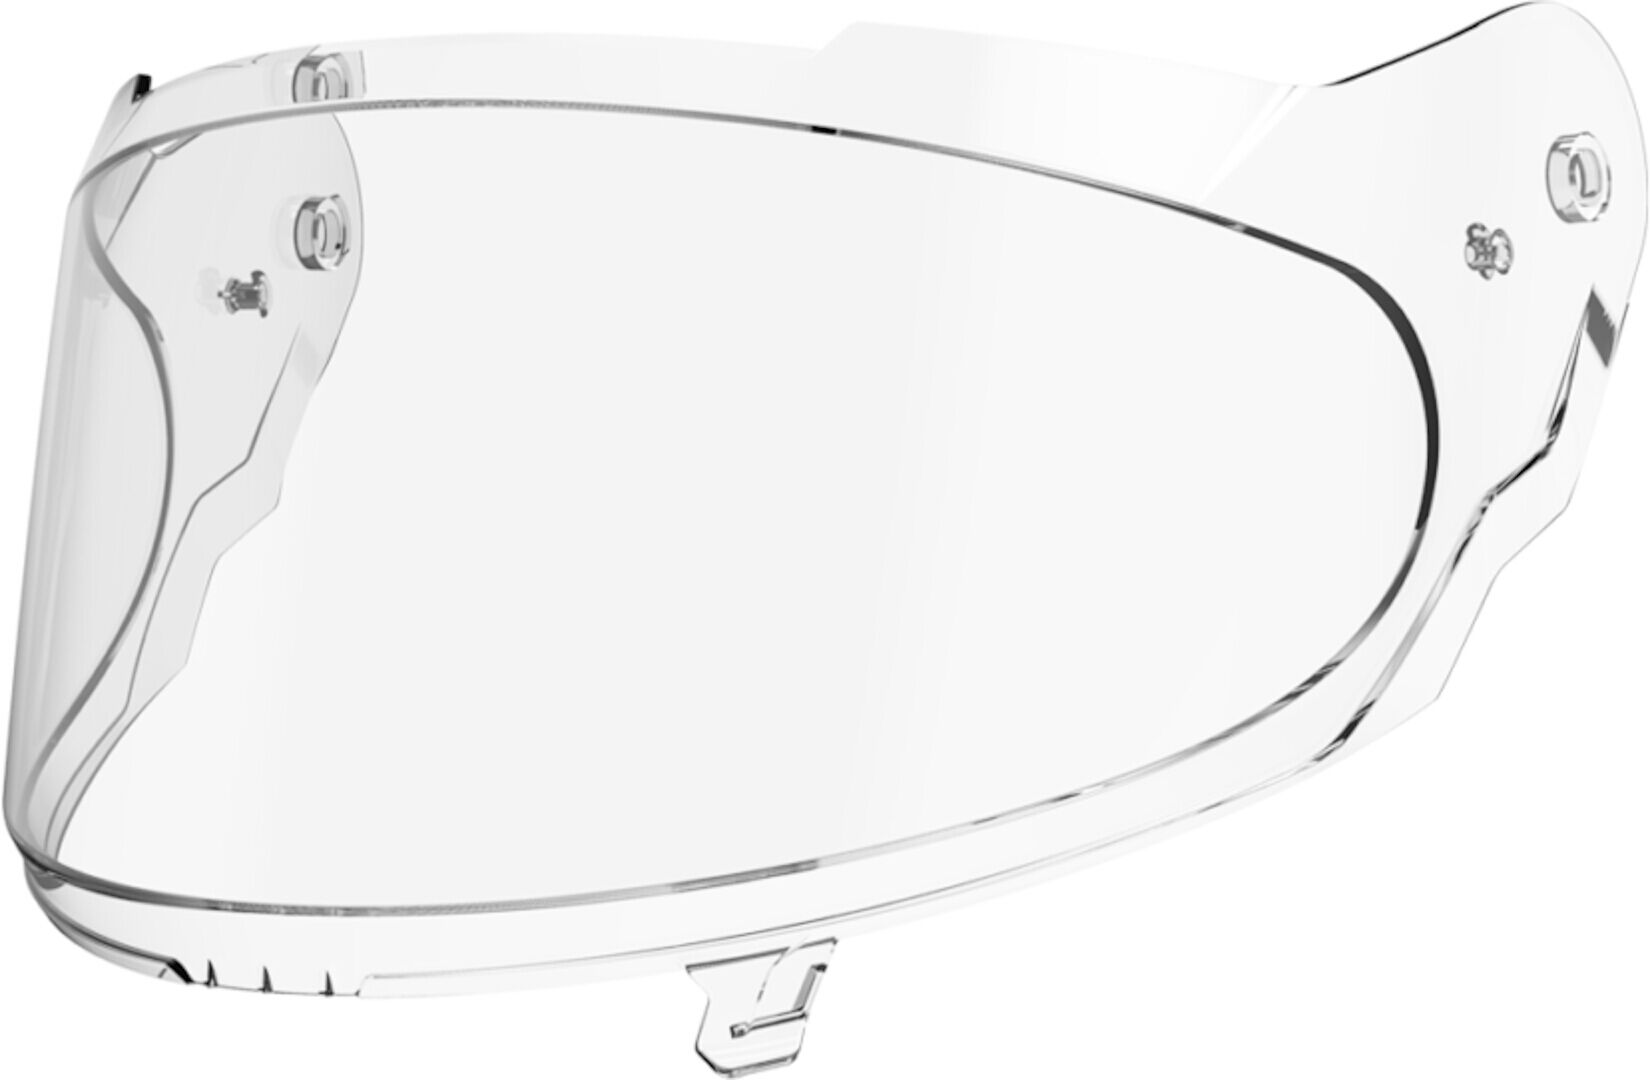 NEXX X.R3R Visera - transparente (un tamaño)